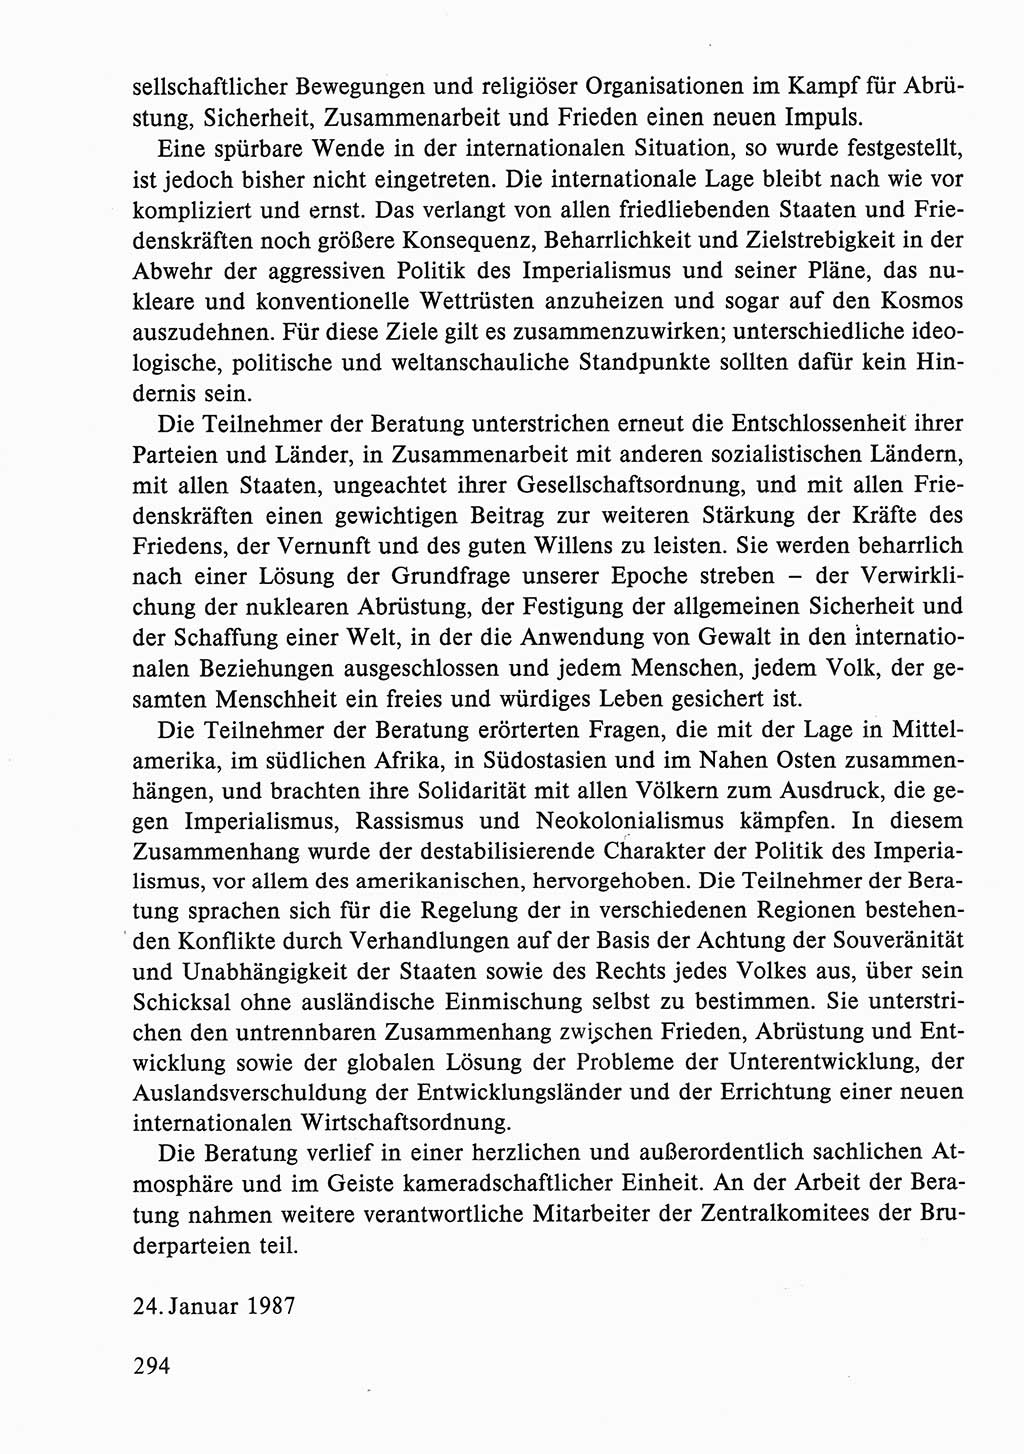 Dokumente der Sozialistischen Einheitspartei Deutschlands (SED) [Deutsche Demokratische Republik (DDR)] 1986-1987, Seite 294 (Dok. SED DDR 1986-1987, S. 294)